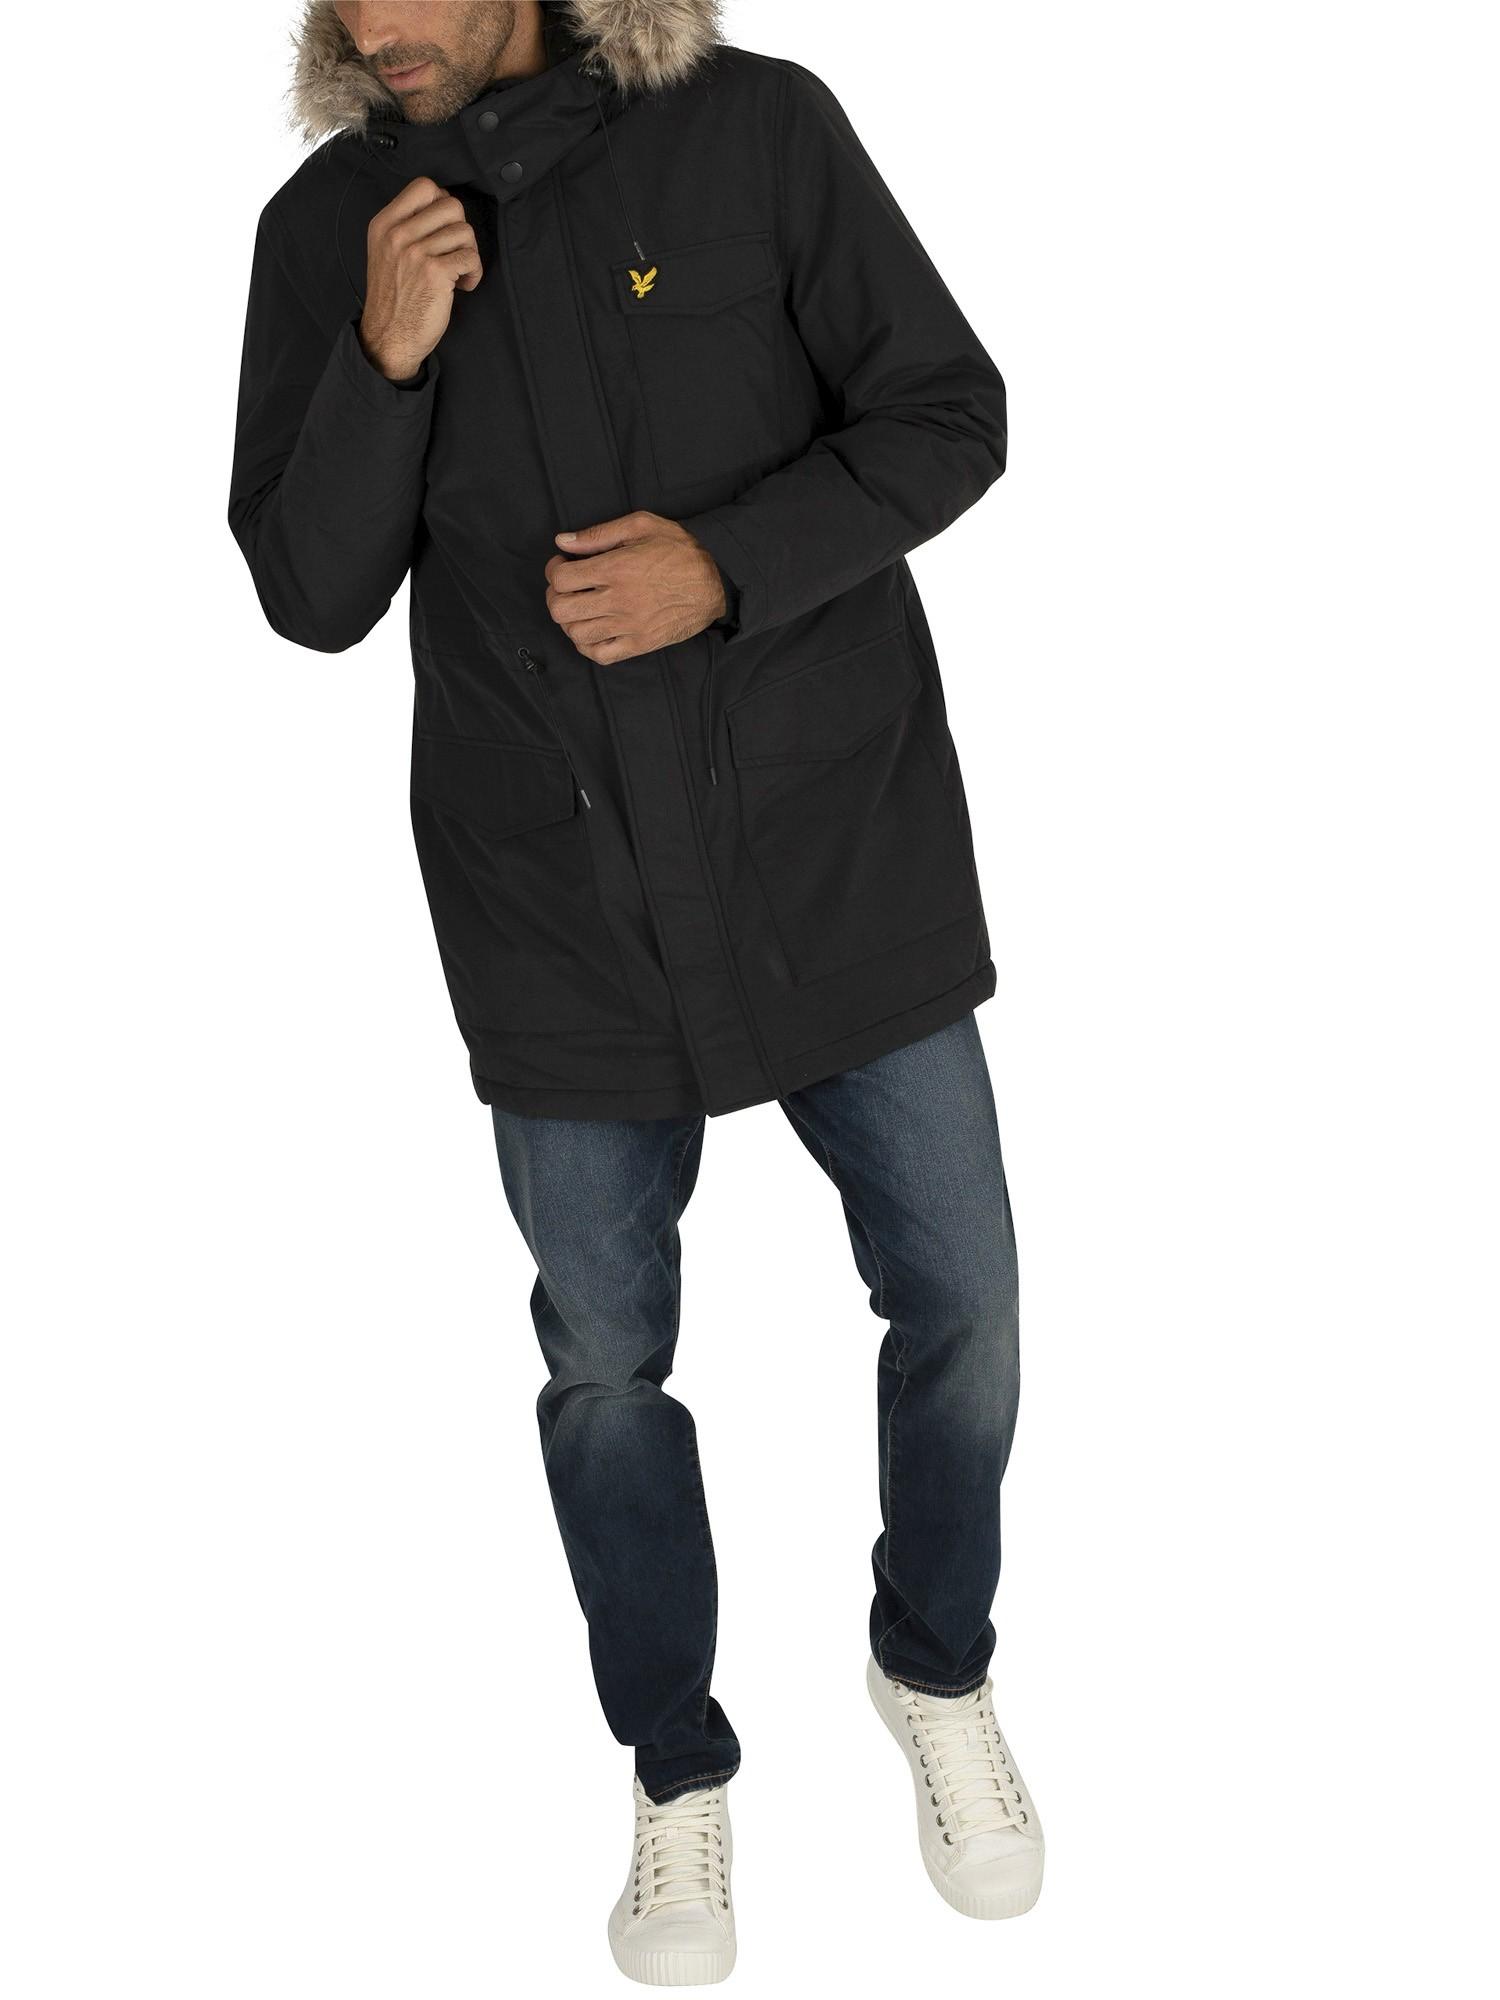 Lyle & Scott Cotton Winter Weight Microfleece Parka Jacket in Black for Men  - Lyst